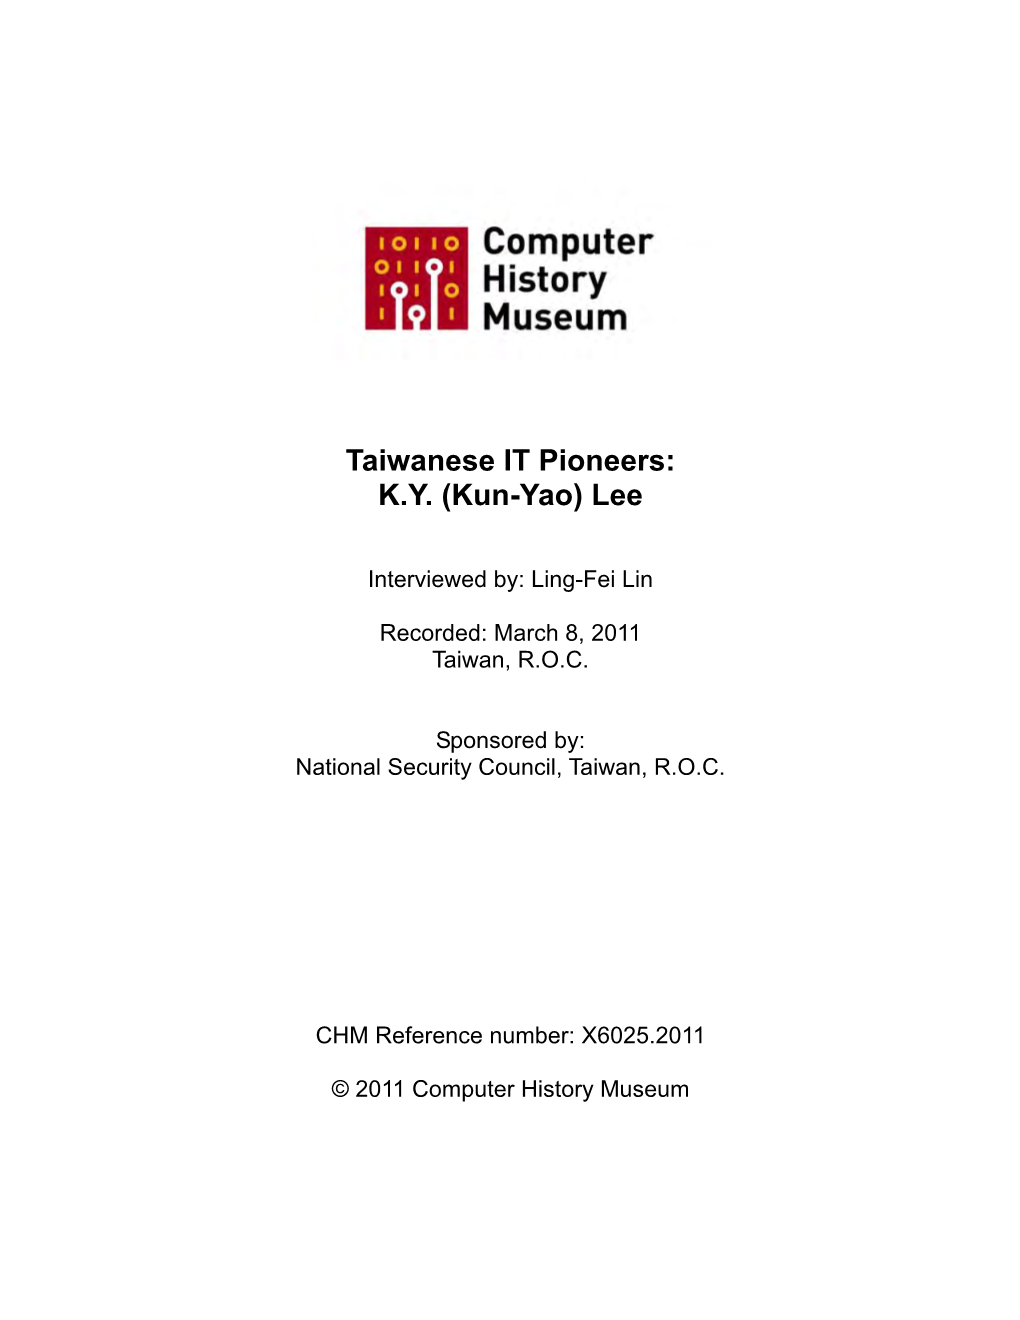 Taiwanese Information Technology (IT) Pioneers: K.Y. (Kun-Yao) Lee; 2011-03-08